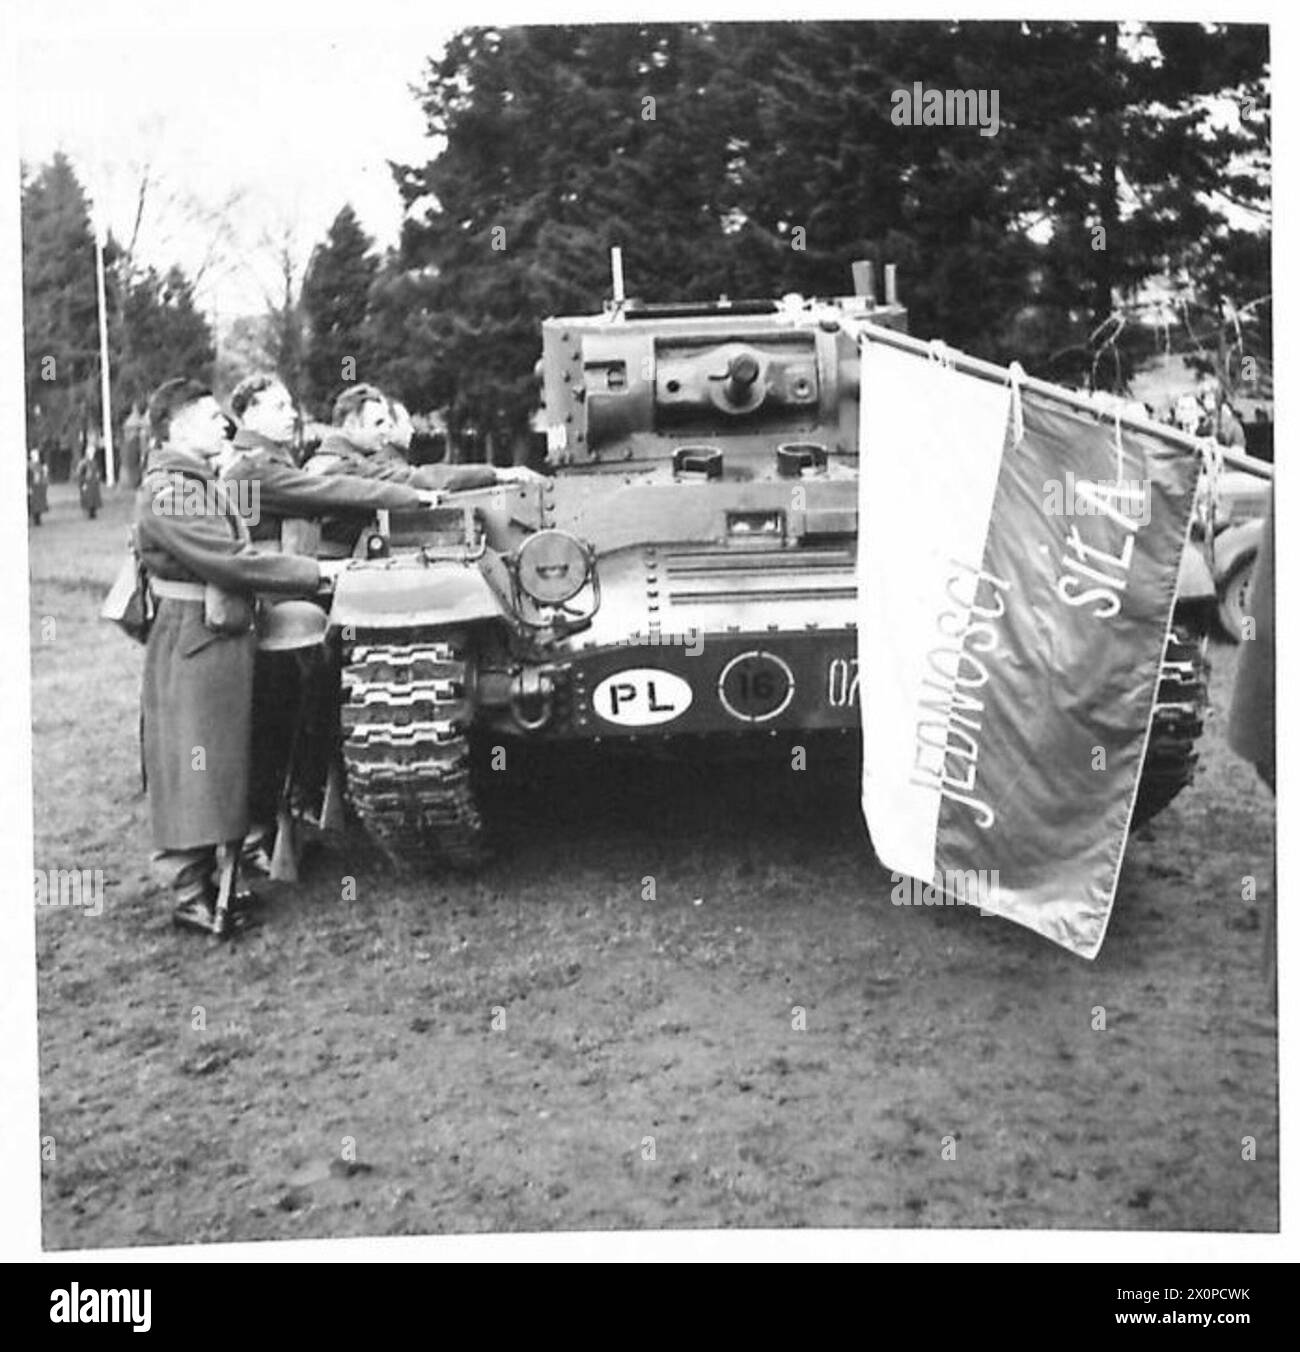 L'ARMÉE POLONAISE EN GRANDE-BRETAGNE, 1940-47 - des volontaires polonais de la ville brésilienne de Porto Alegre prêtent serment (en plaçant leurs deux premiers doigts) sur un char de la Saint-Valentin (T 1292860), probablement au Centre d'entraînement de l'armée polonaise à Alyth. Ils sont des militaires du 66e bataillon, 16e brigade de chars (1er corps polonais).Notez un drapeau national polonais avec une légende écrite - 'W jedności siła - Force dans l'unité' - apporté par des volontaires avec eux. Il leur a été présenté par l'une des organisations polonaises en Amérique du Sud Armée polonaise, Forces armées polonaises dans l'Ouest, 1er corps, Forces armées polonaises dans le Banque D'Images